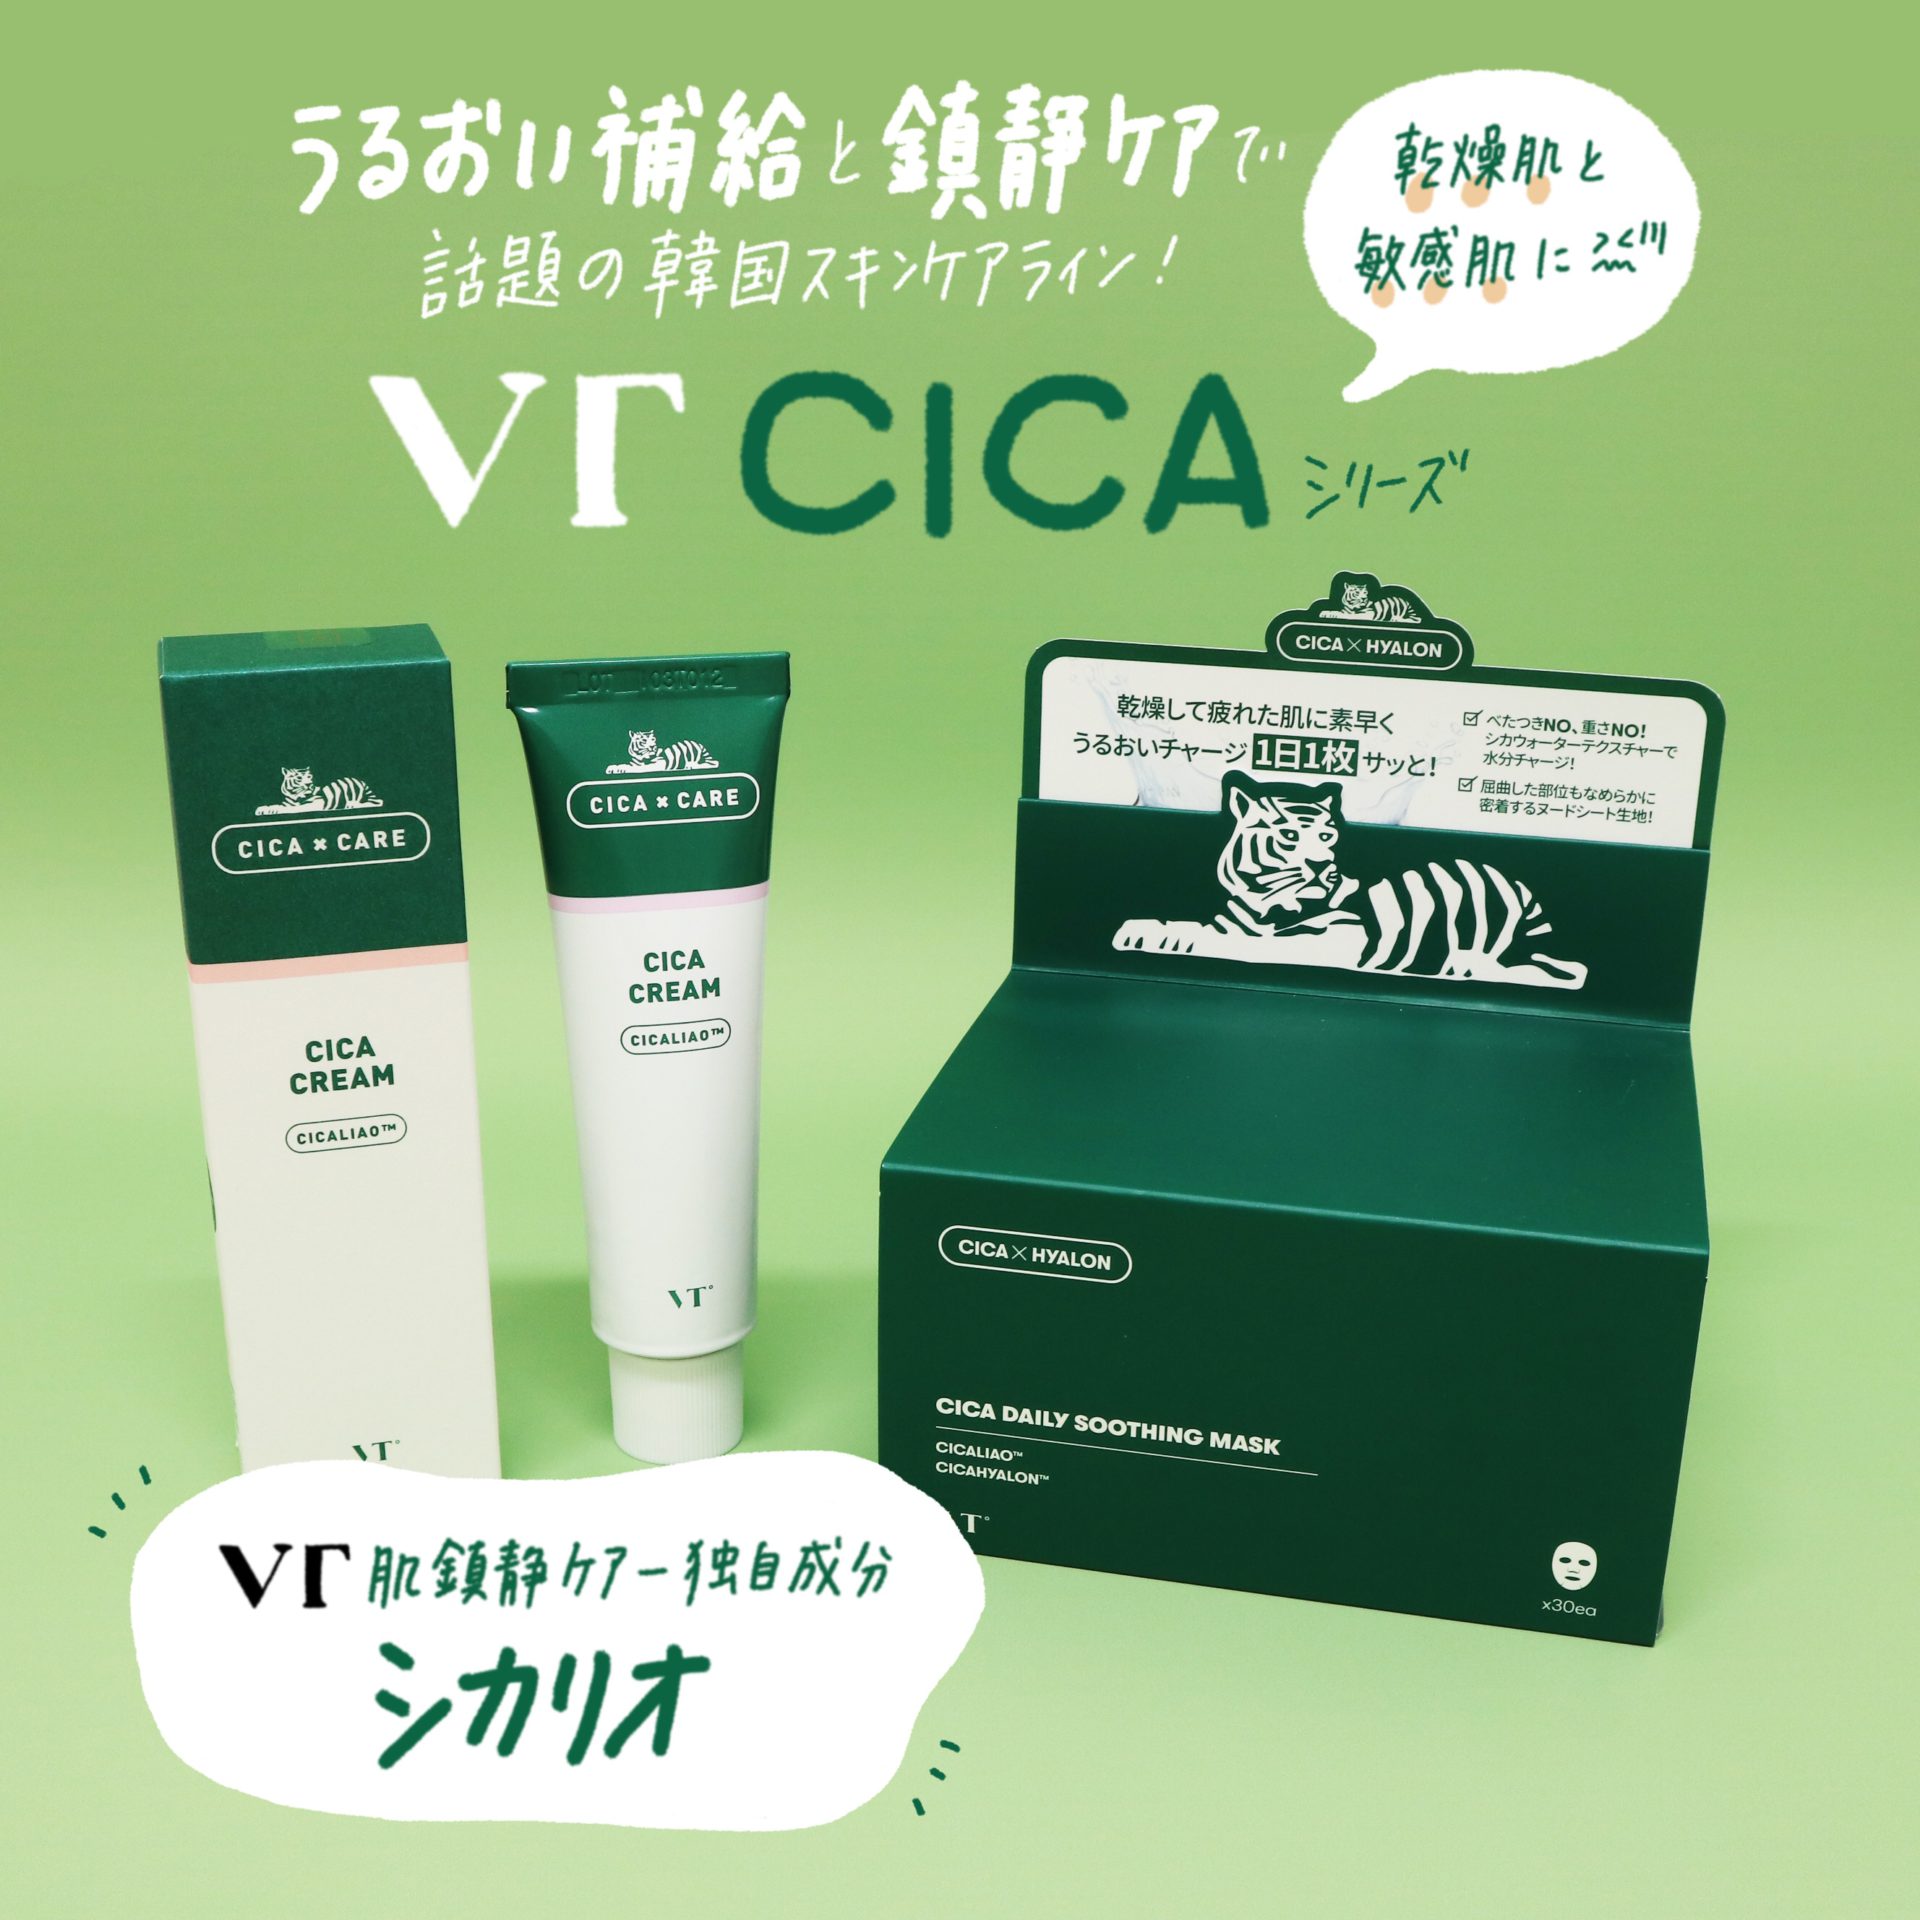 VT CICA(シカ)シリーズ - Pion